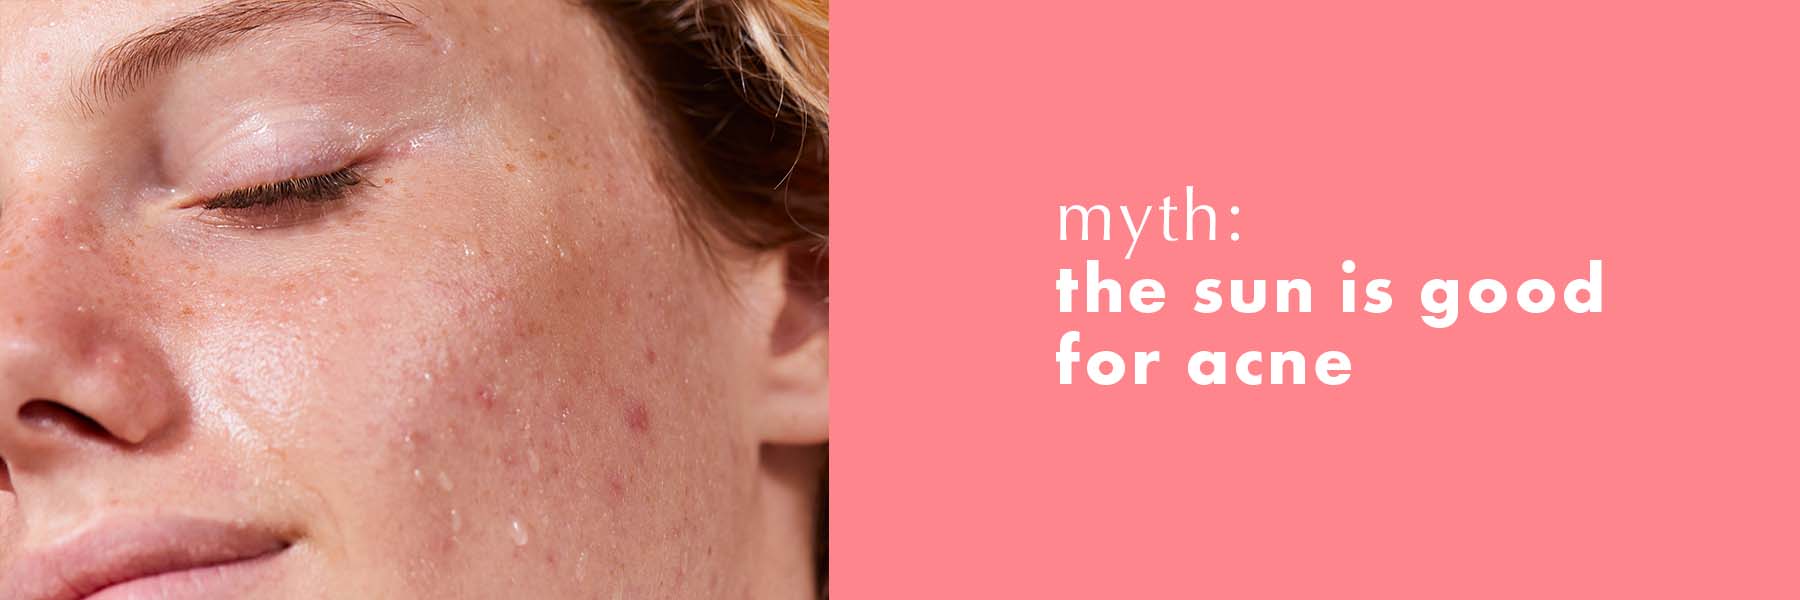 Myth 1: The sun is good for acne